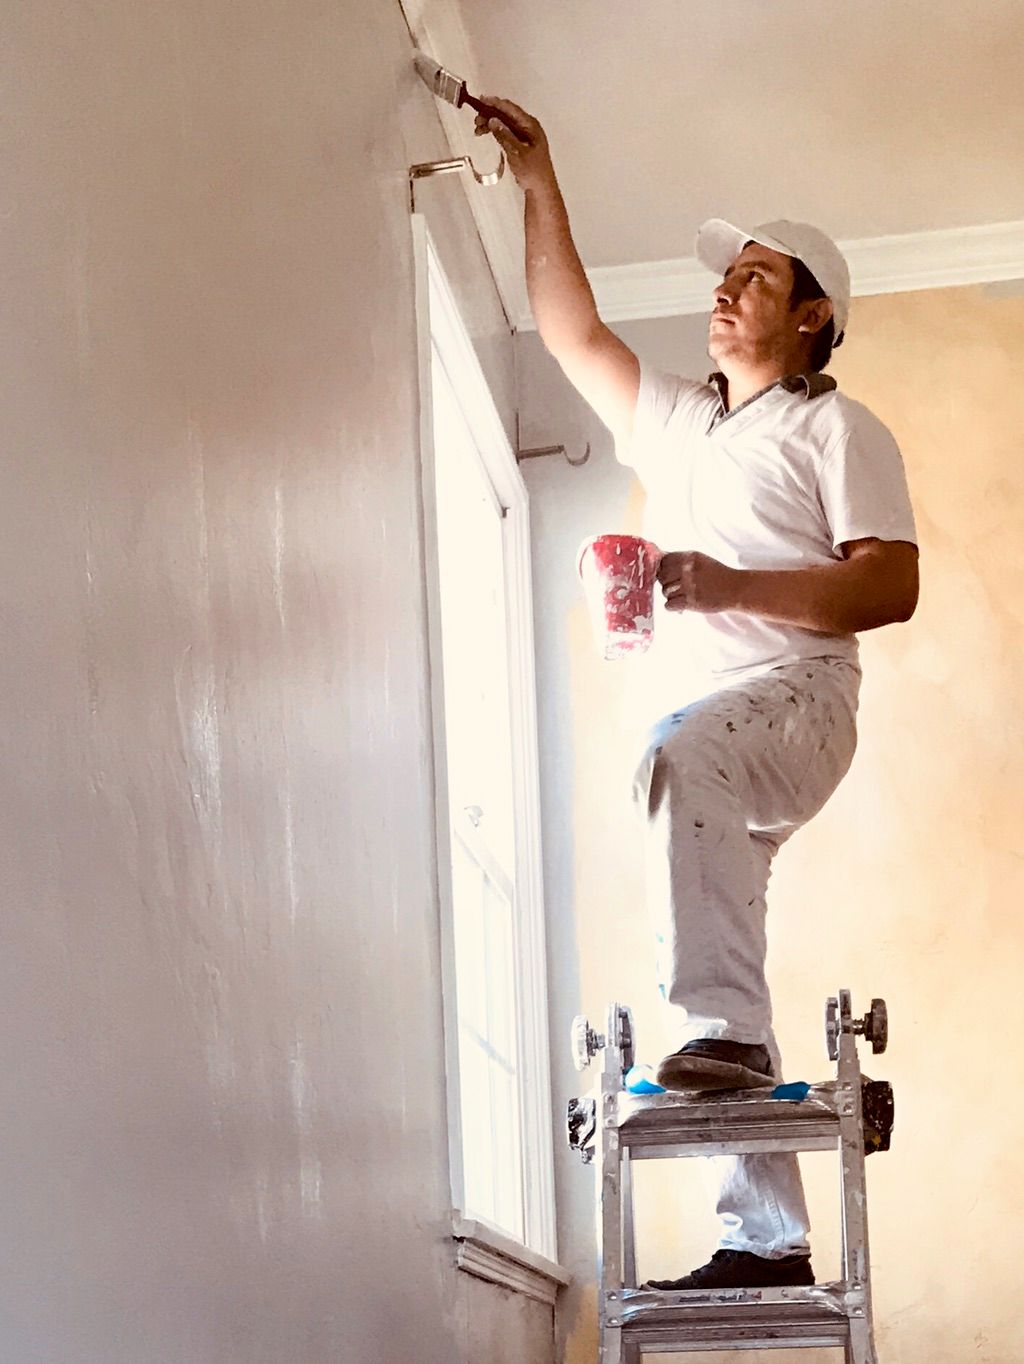 Ari, Drywall/plaster repair and painting